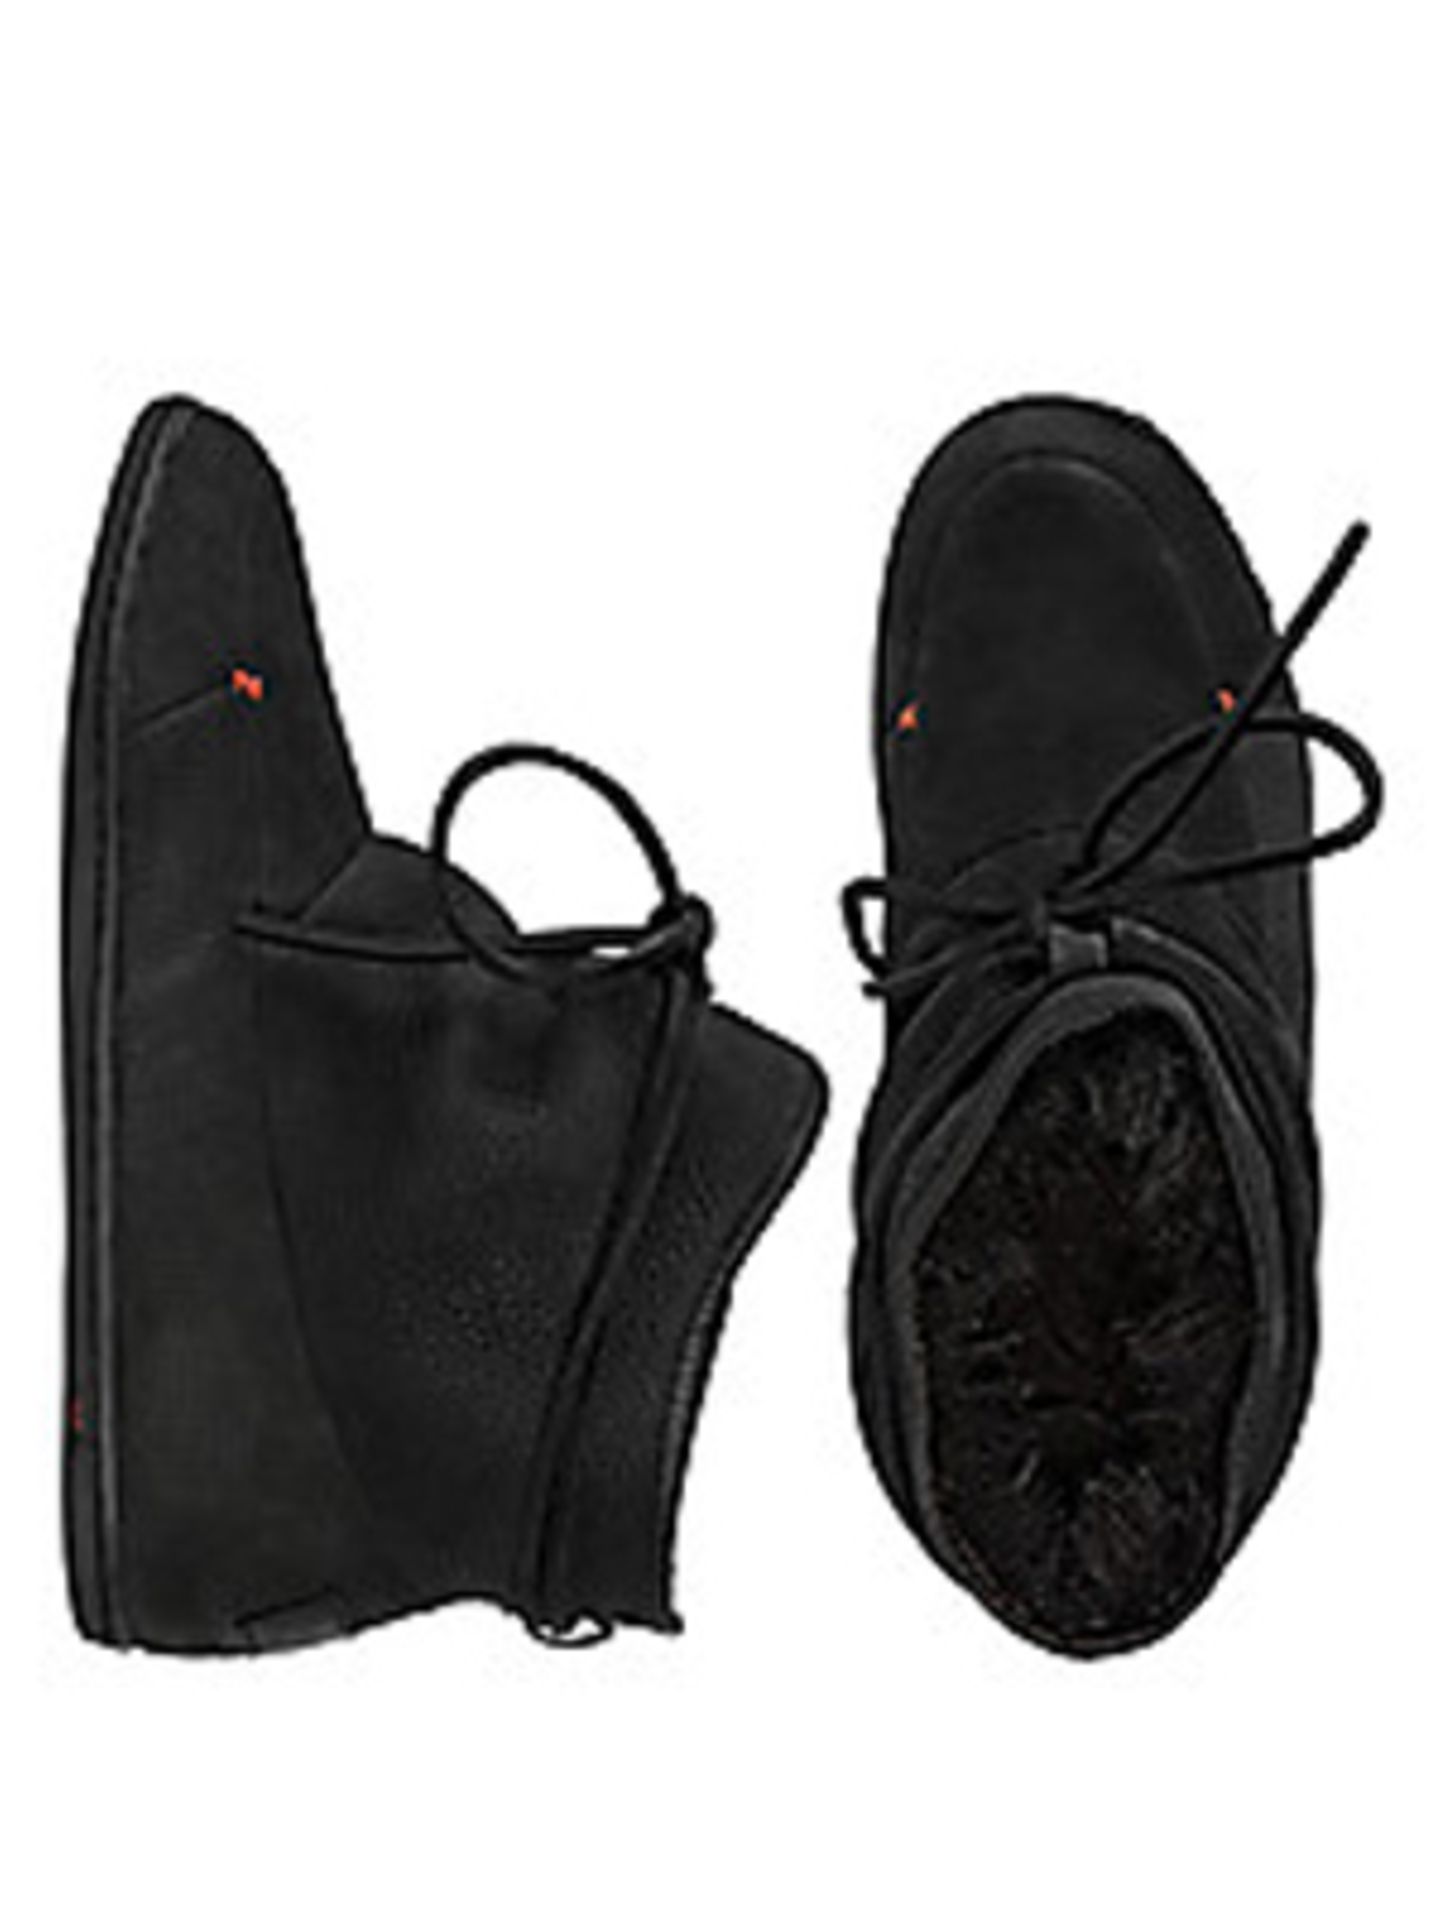 Schuhe aus Nubukleder mit wärmenden Fellfutter. HUB, um 110 Euro. Erhältlich bei frontlineshop.com